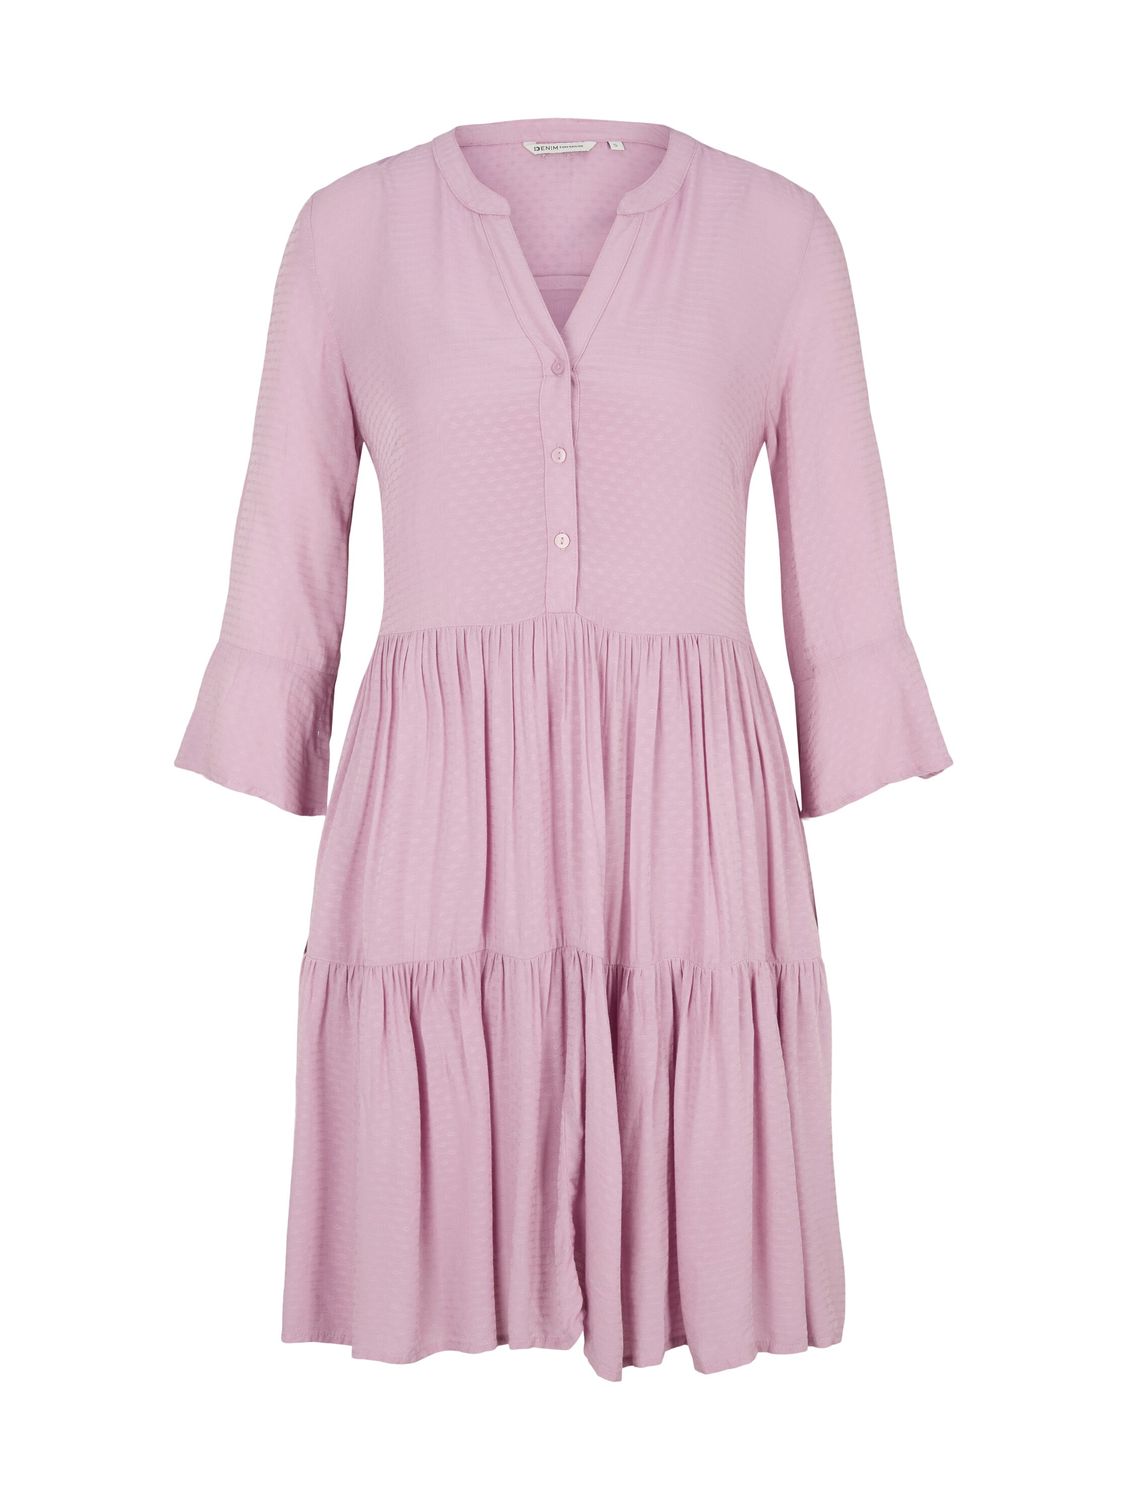 Платье TOM TAILOR Denim BABYDOLL, розовый платье tom tailor denim babydoll розовый